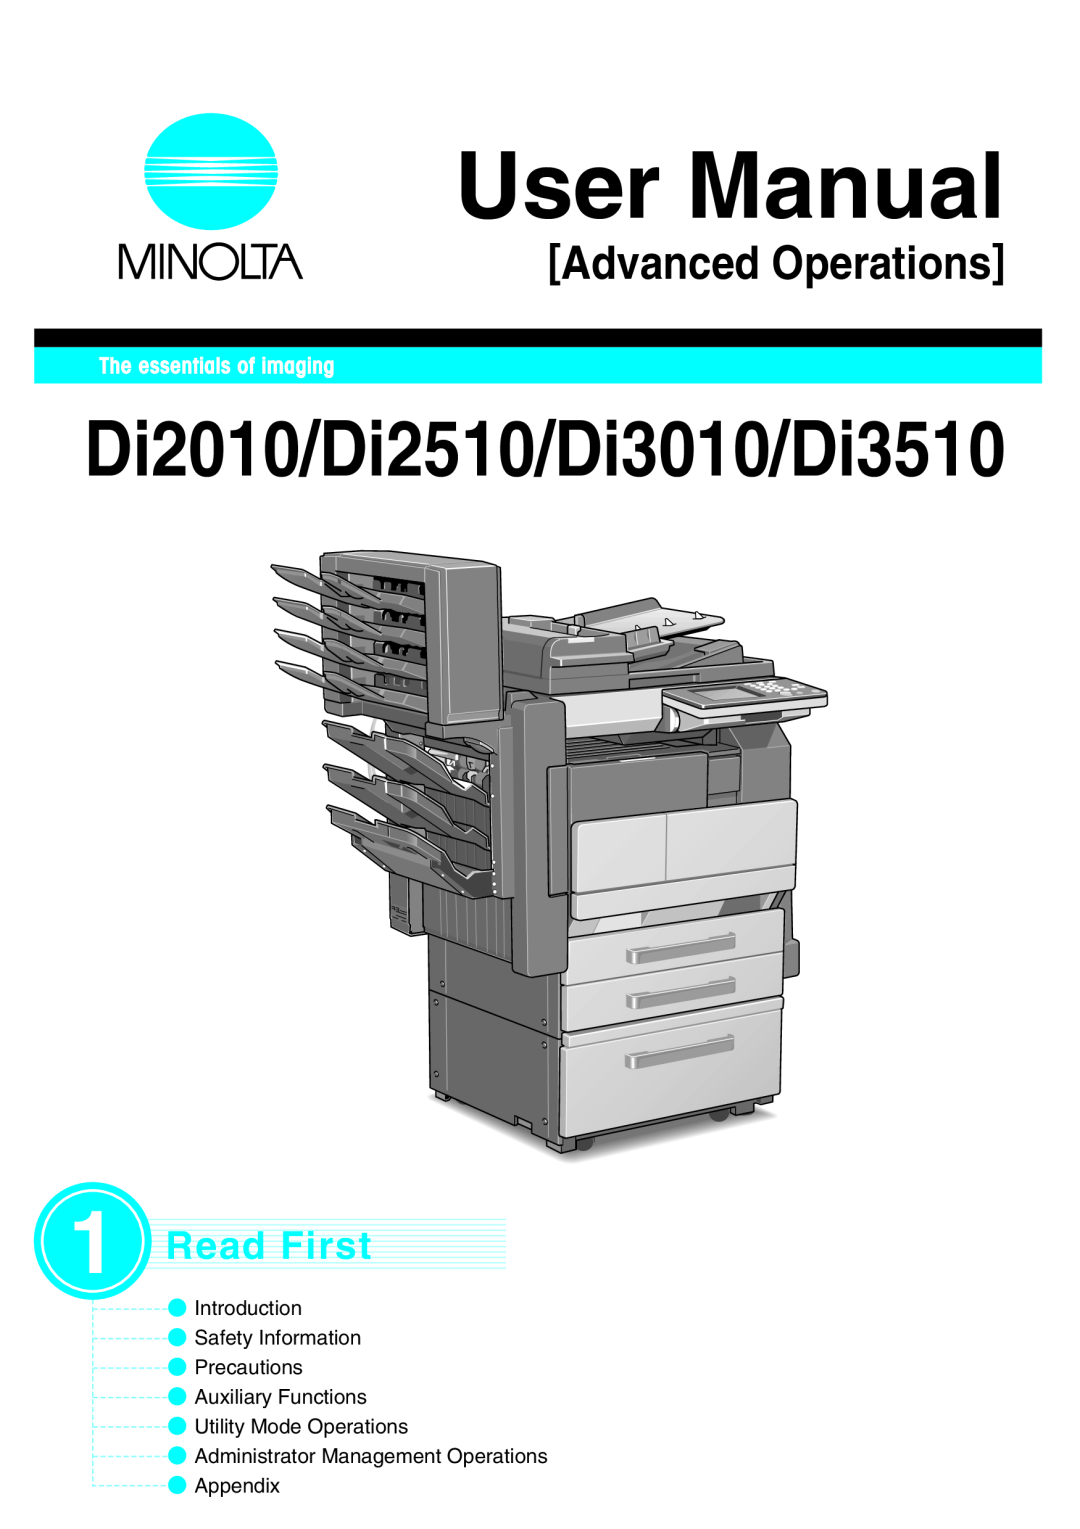 Minolta DI2010, DI2510, DI3010 user manual User Manual, Di2010/Di2510/Di3010/Di3510, Advanced Operations, Read First 